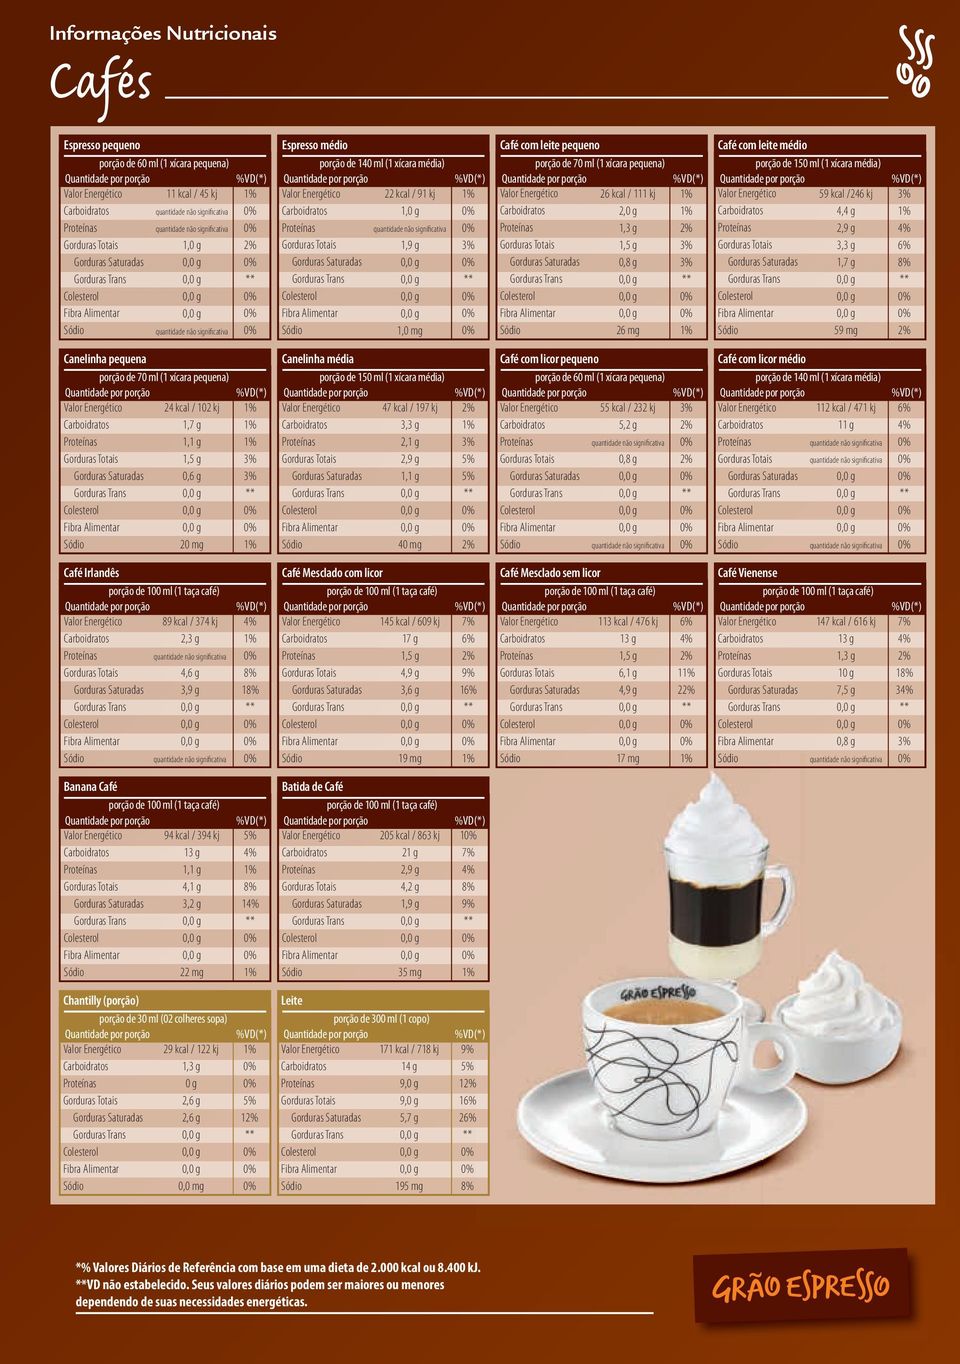 pequena) 24 kcal / 102 kj 20 mg Canelinha média porção de 150 ml (1 xícara média) 47 kcal / 197 kj 3,3 g 2,1 g 40 mg Café com licor pequeno porção de 60 ml (1 xícara pequena) 55 kcal / 232 kj Café